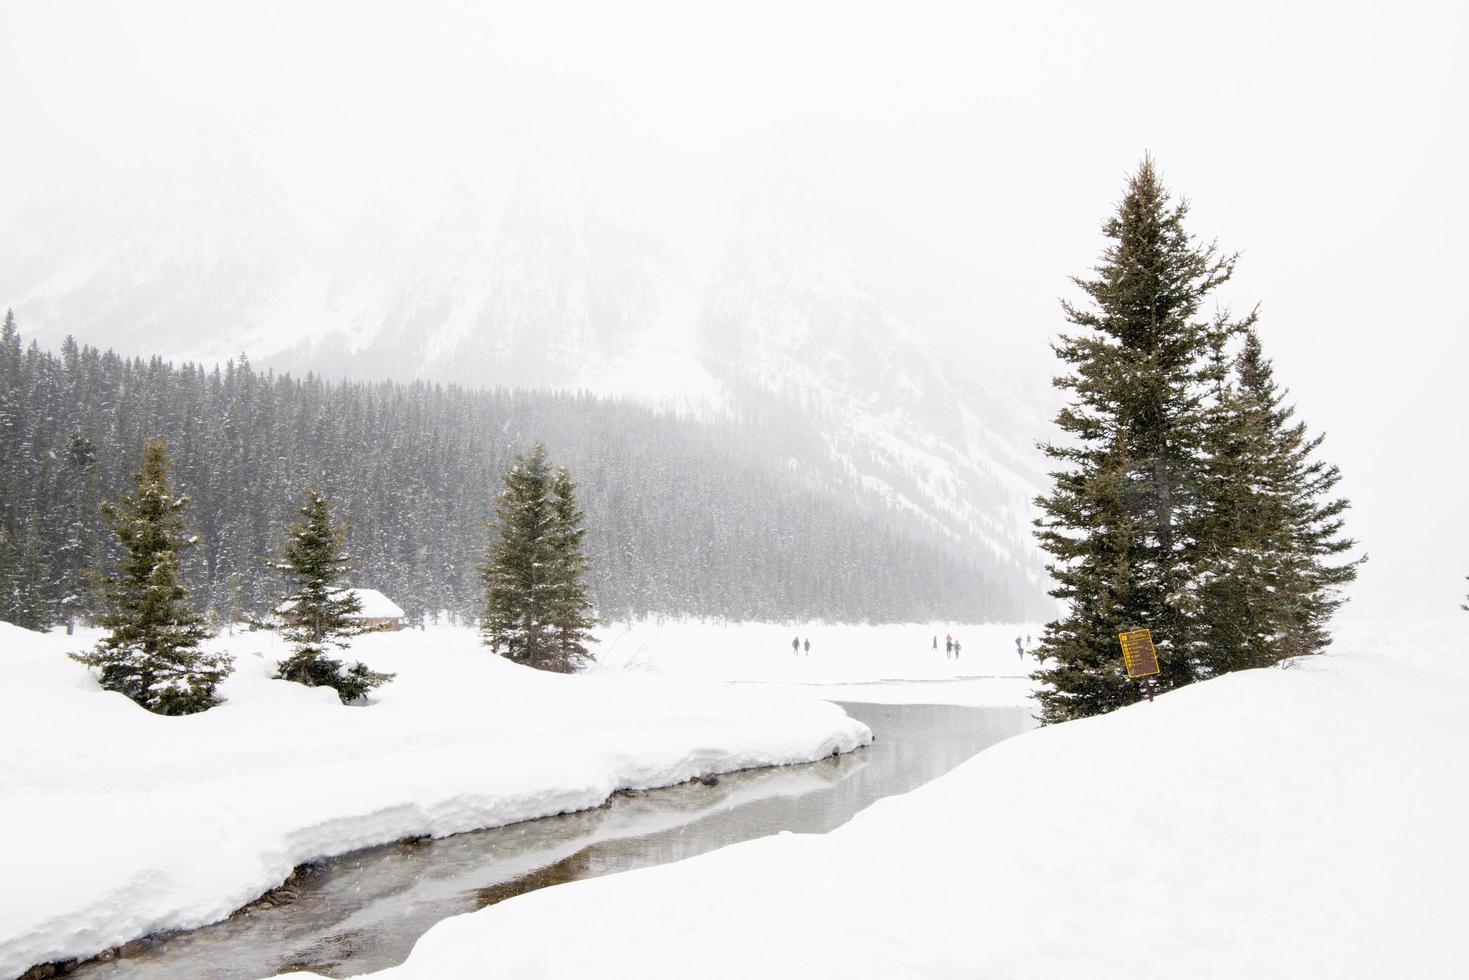 hermoso paisaje invernal en el lago luise, con lago congelado, bosque nevado y gente en la distancia. Canadá. foto